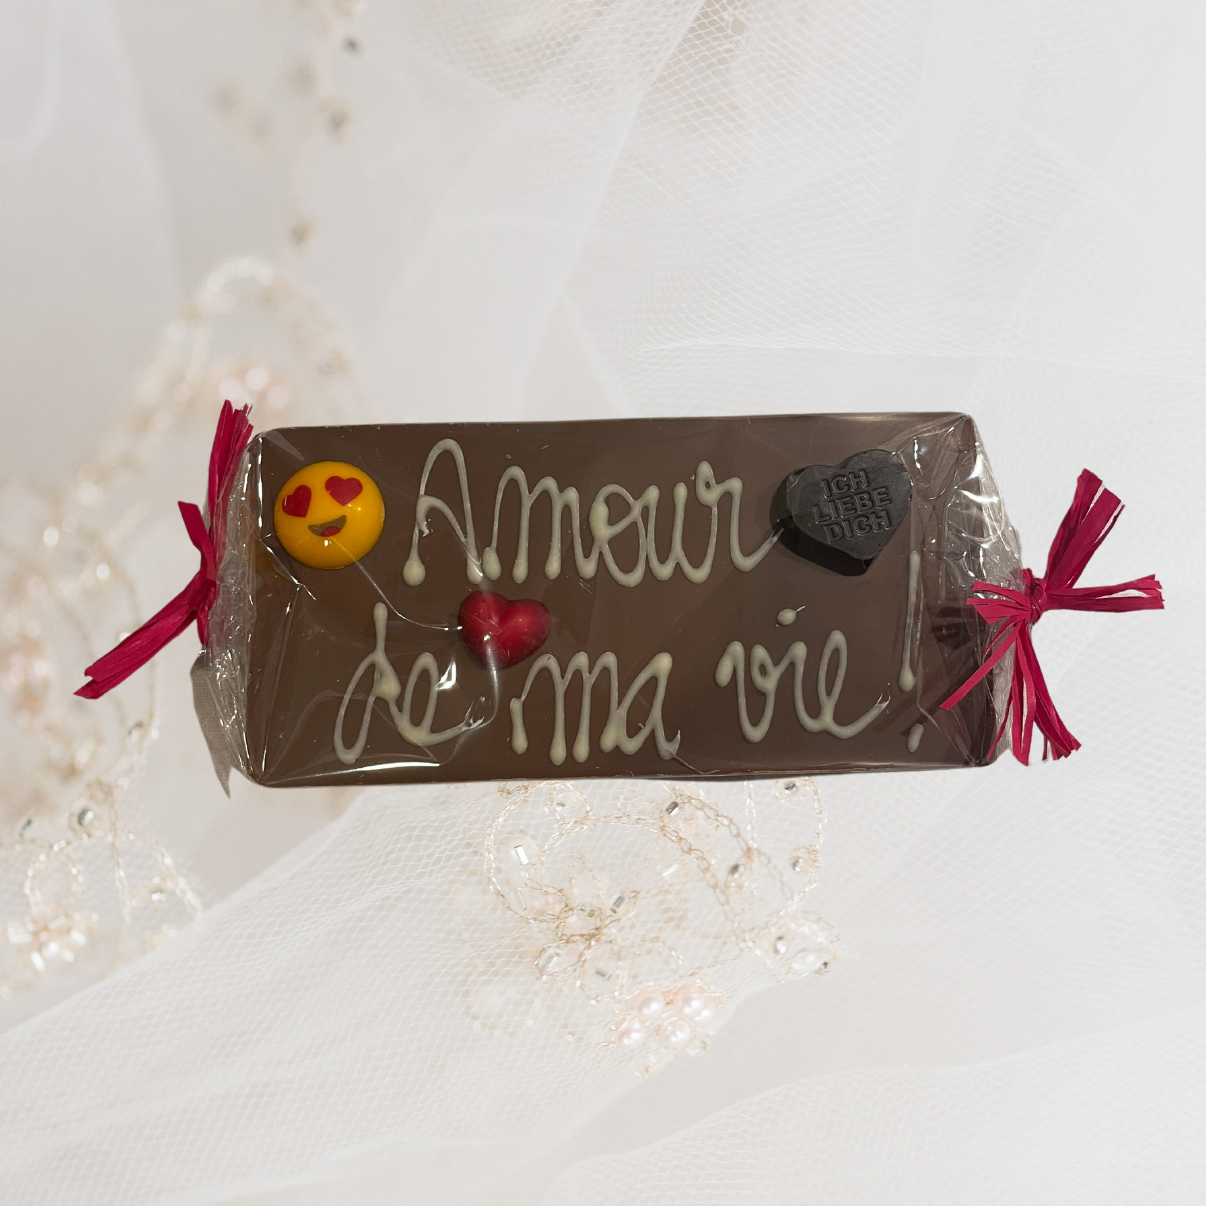 Plaque chocolat spéciale "Amour"